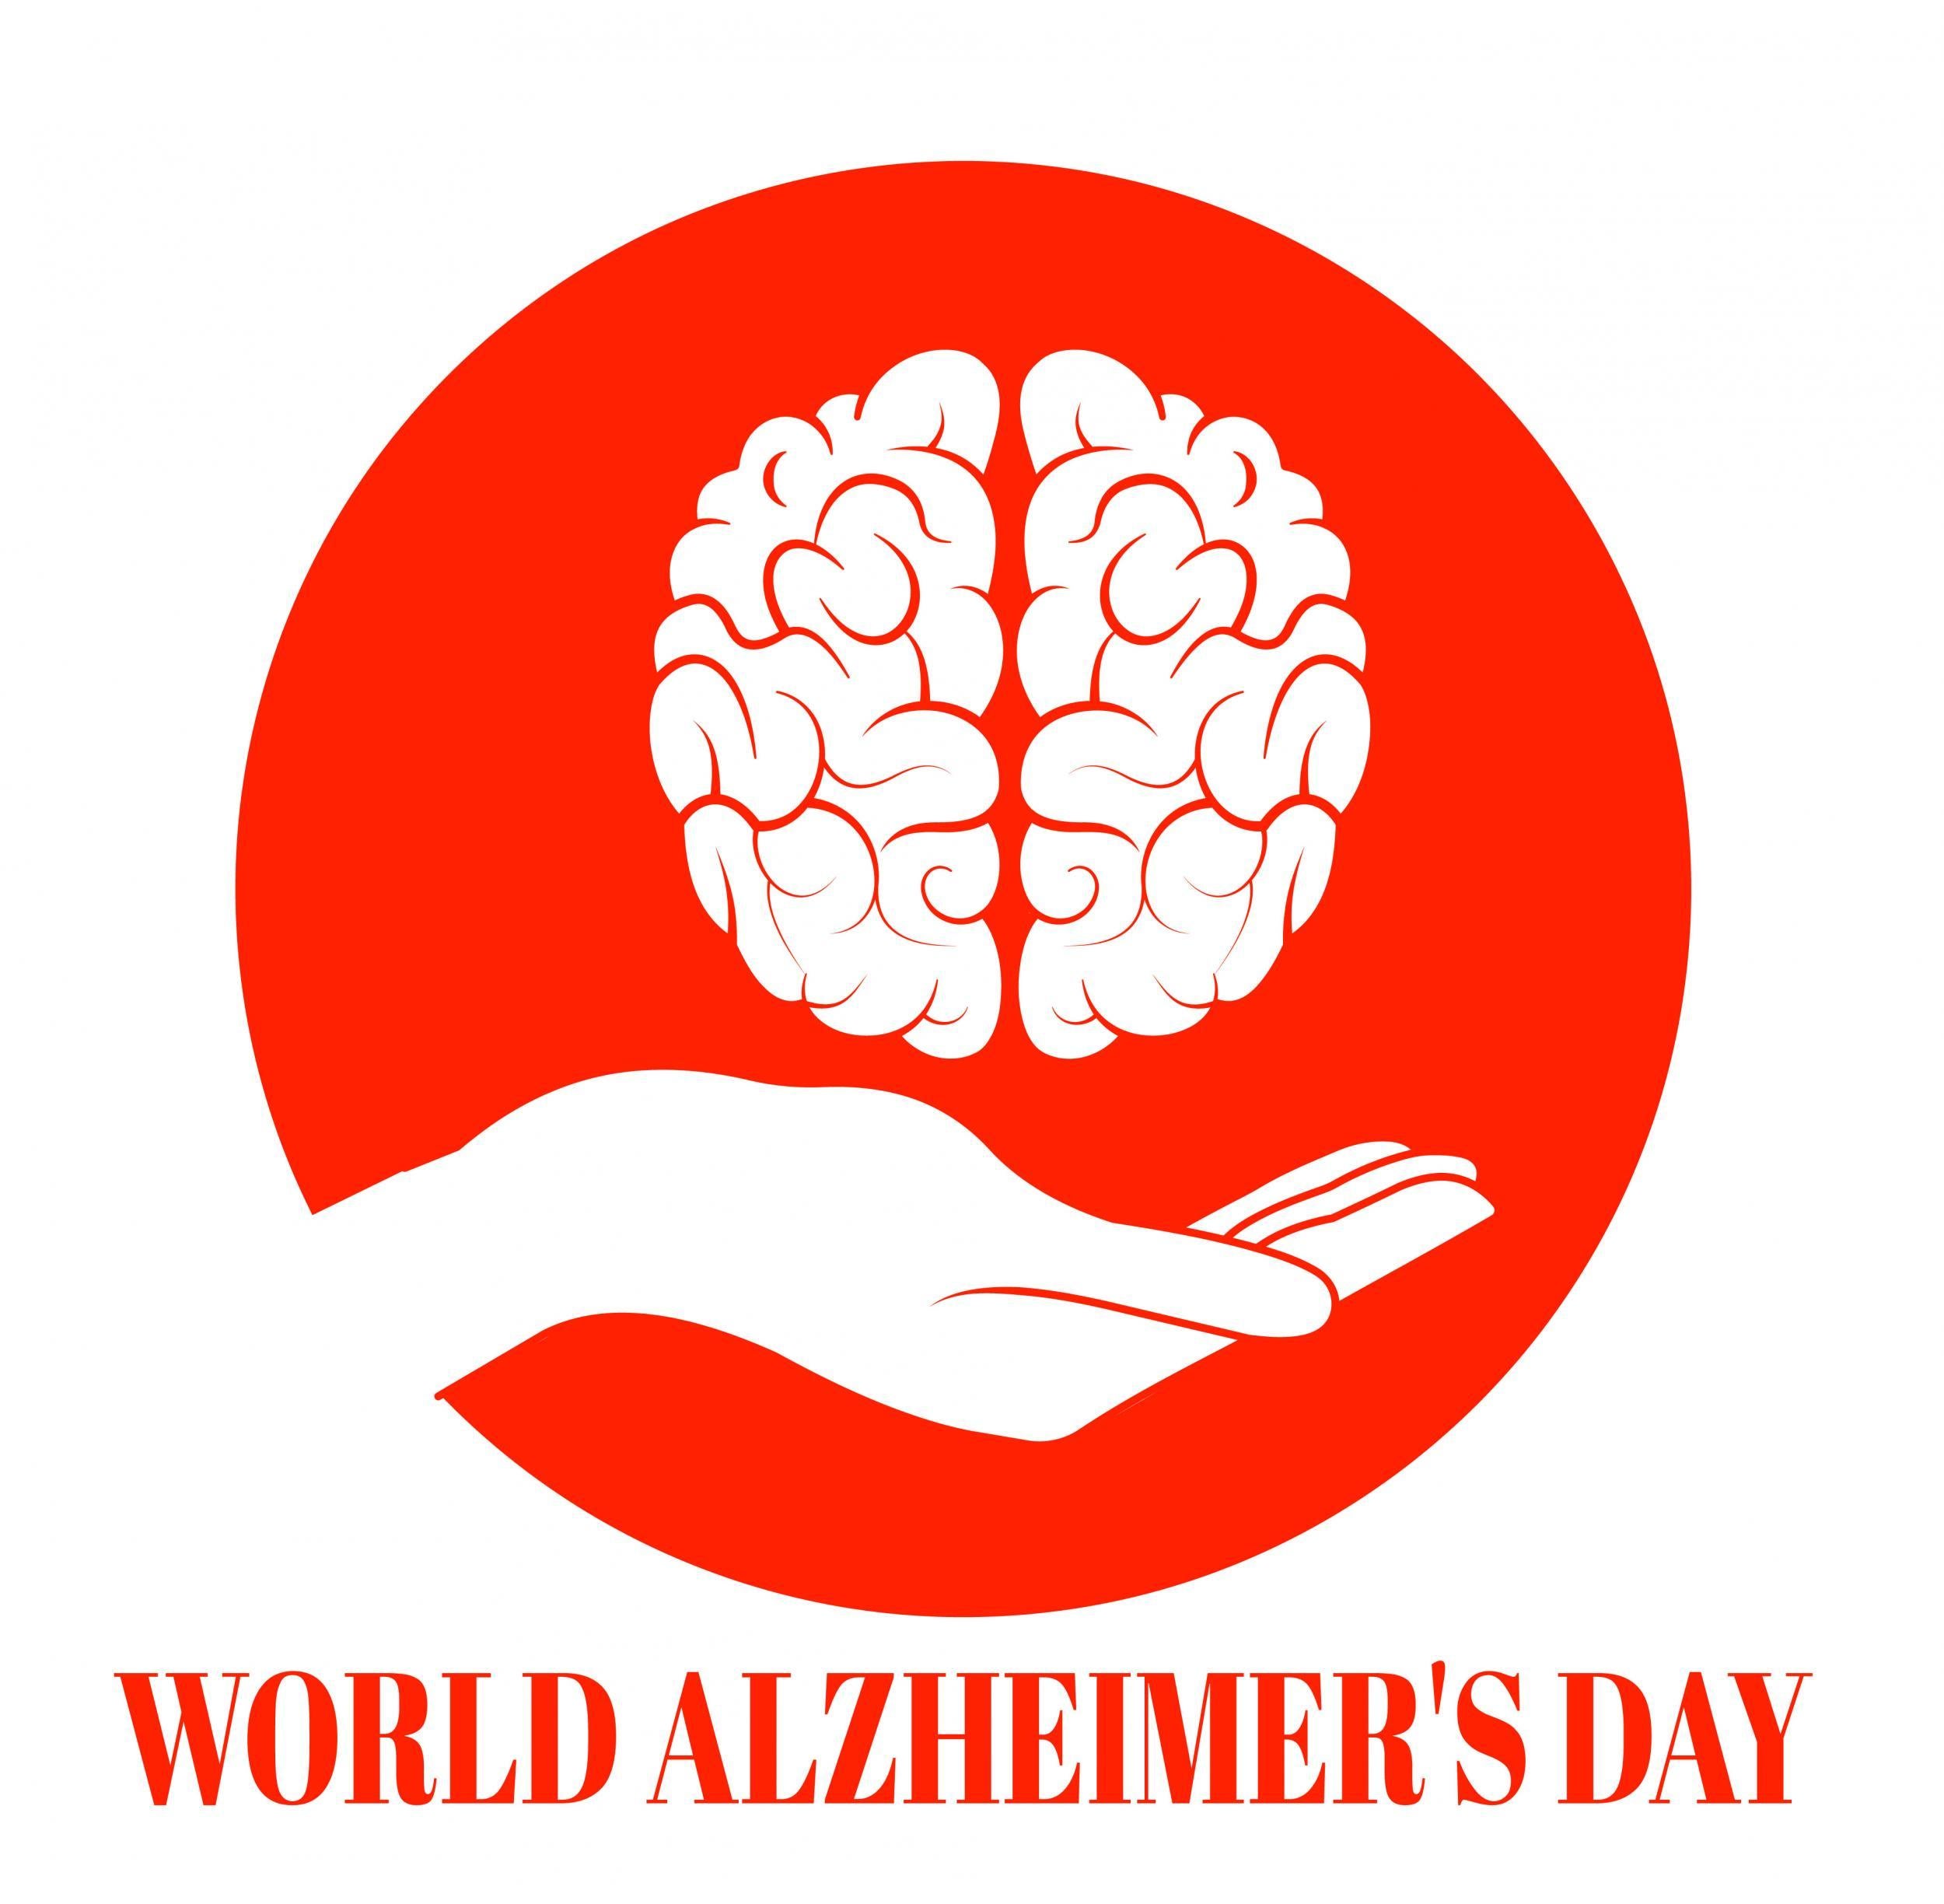 September 21 is World Alzheimer's Day